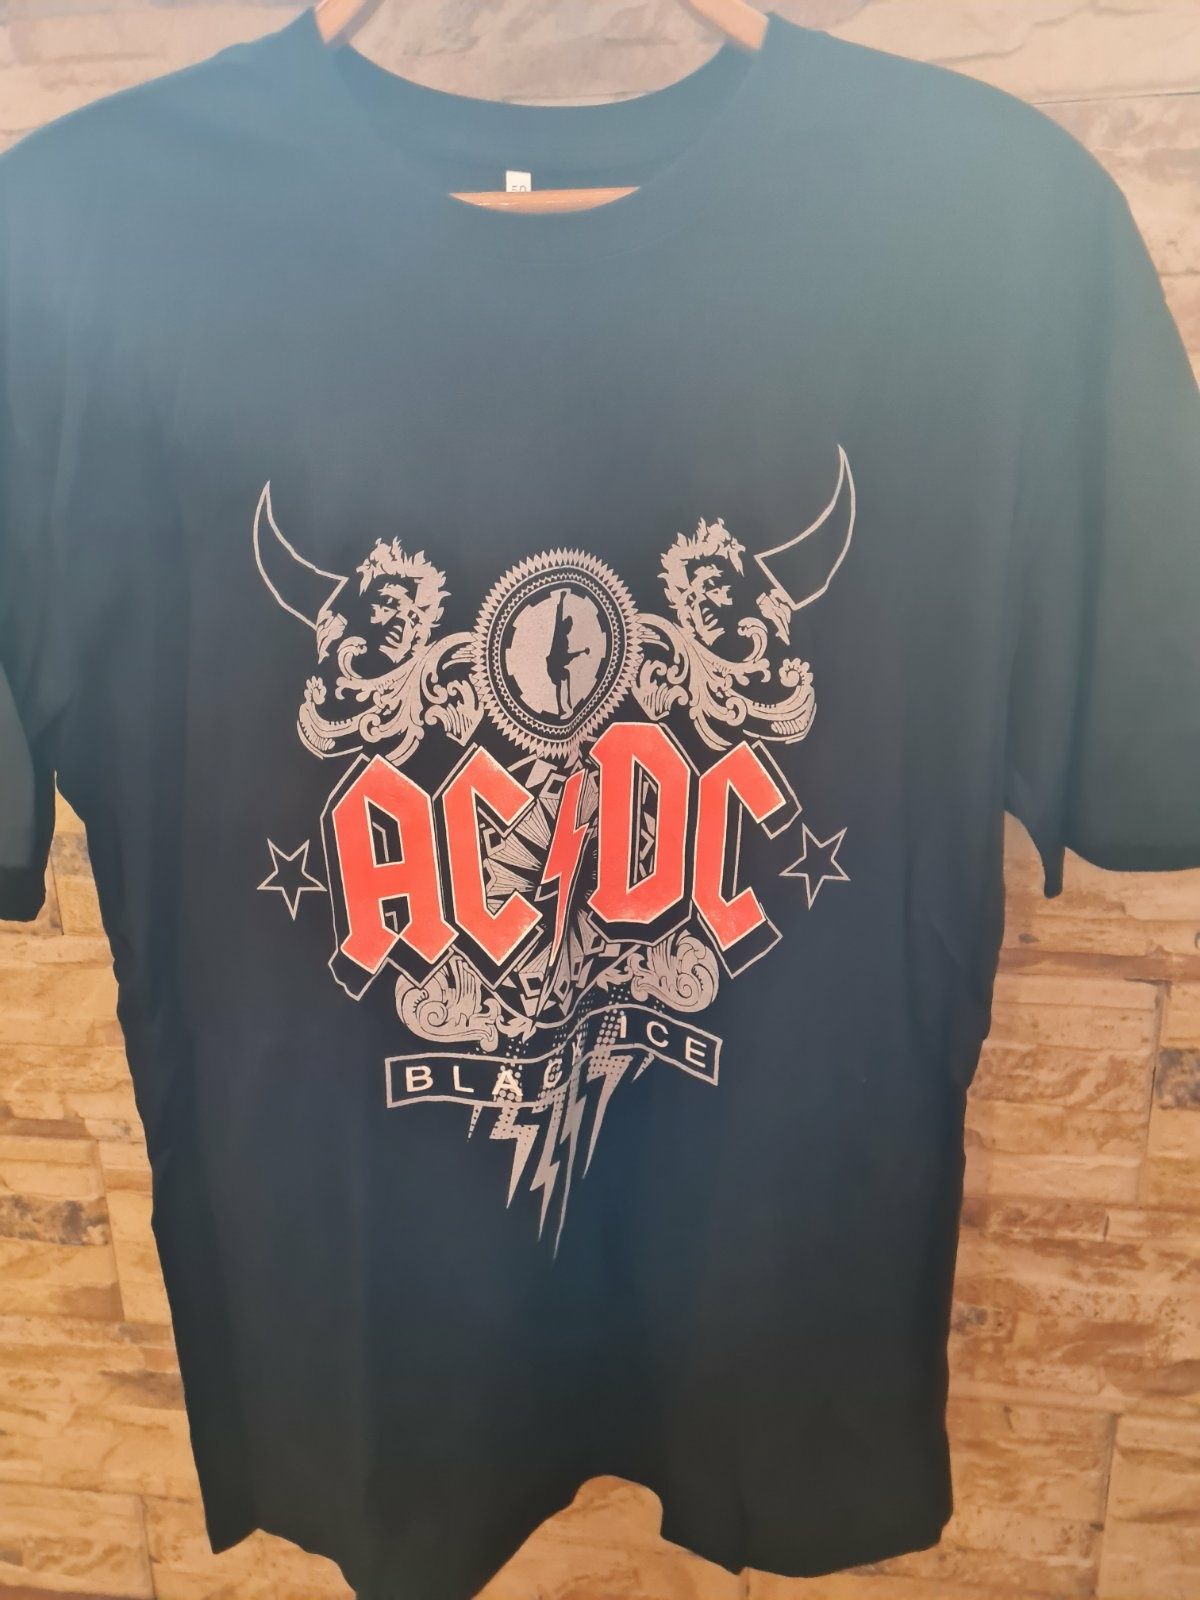 Продам новыйе футболки с рок группами.